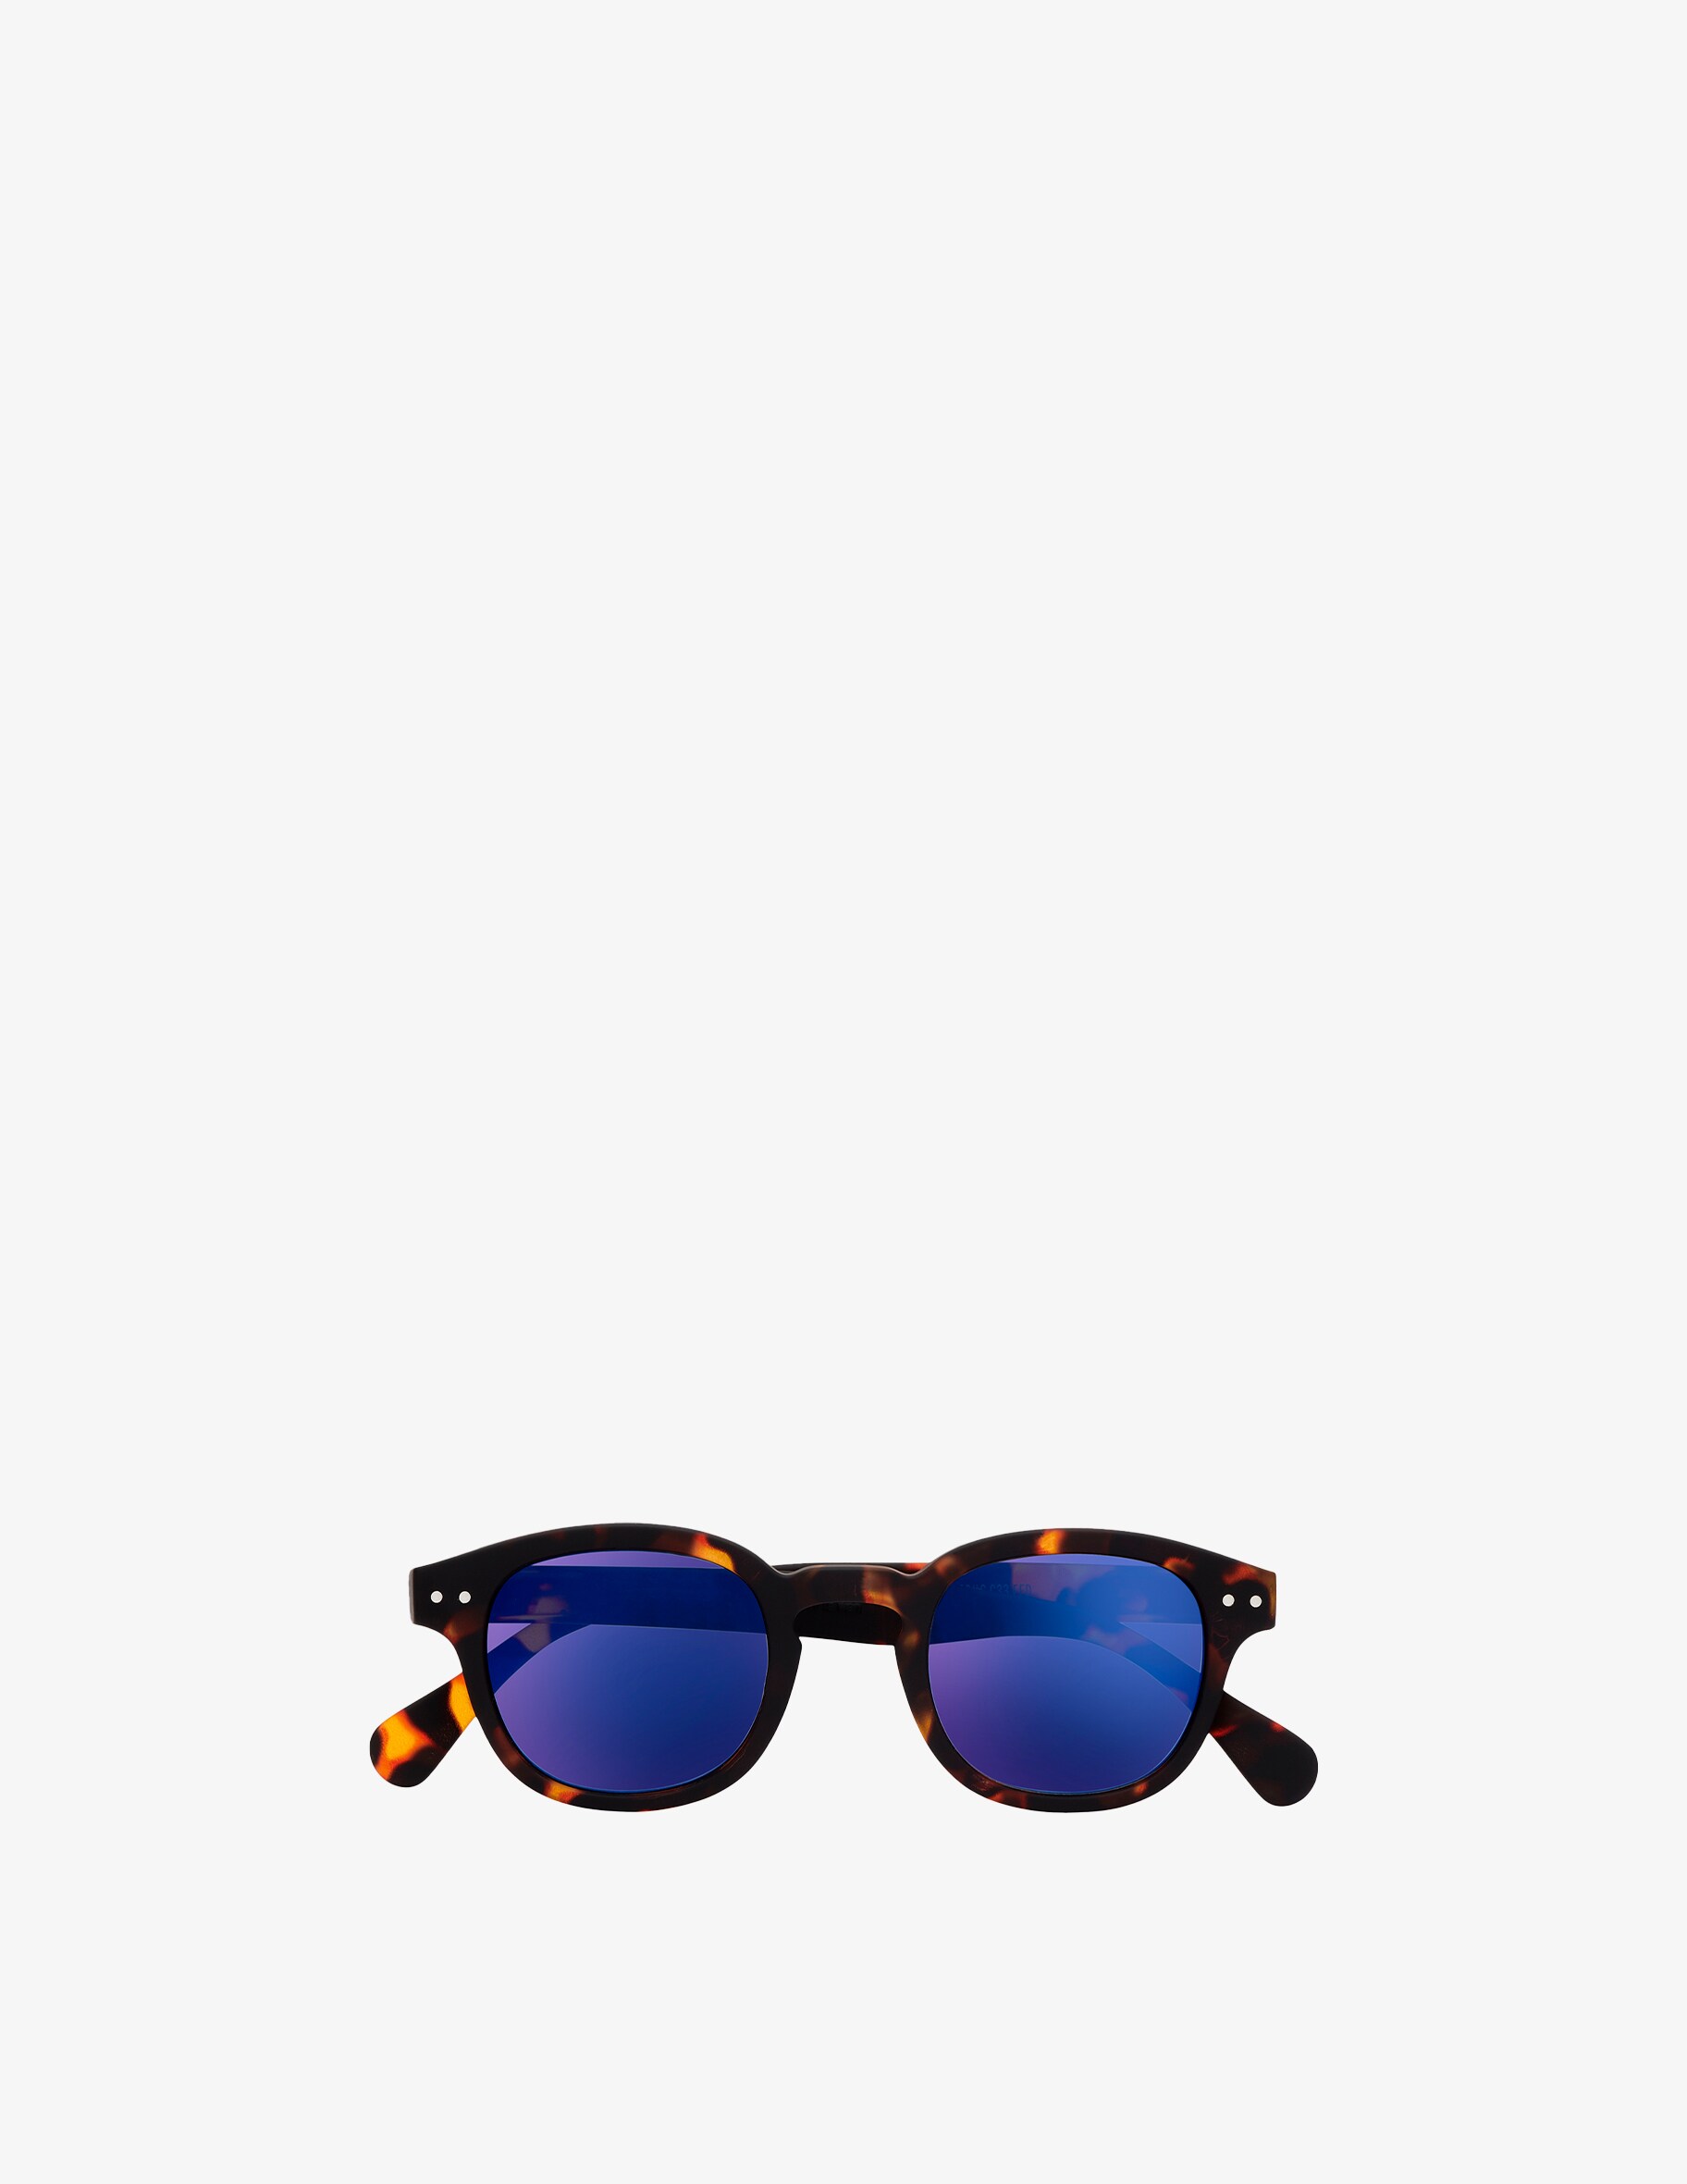 Солнцезащитные очки Модель #C с зеркальными линзами Izipizi, цвет Tortoise